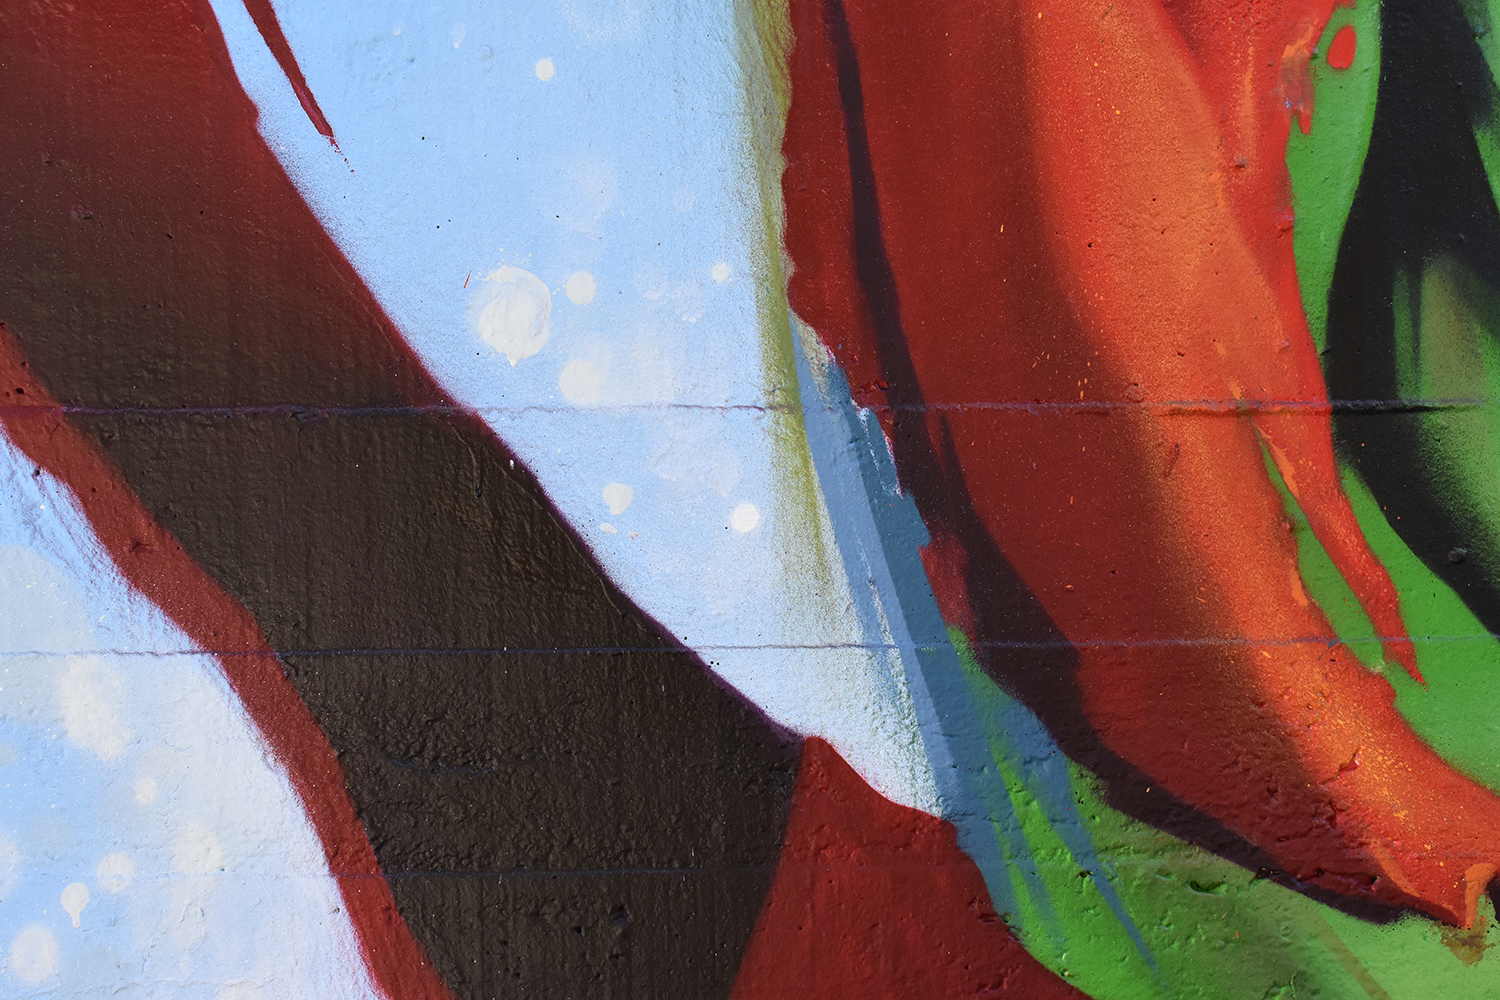 Arte urbano y el graffiti en espacios educativos